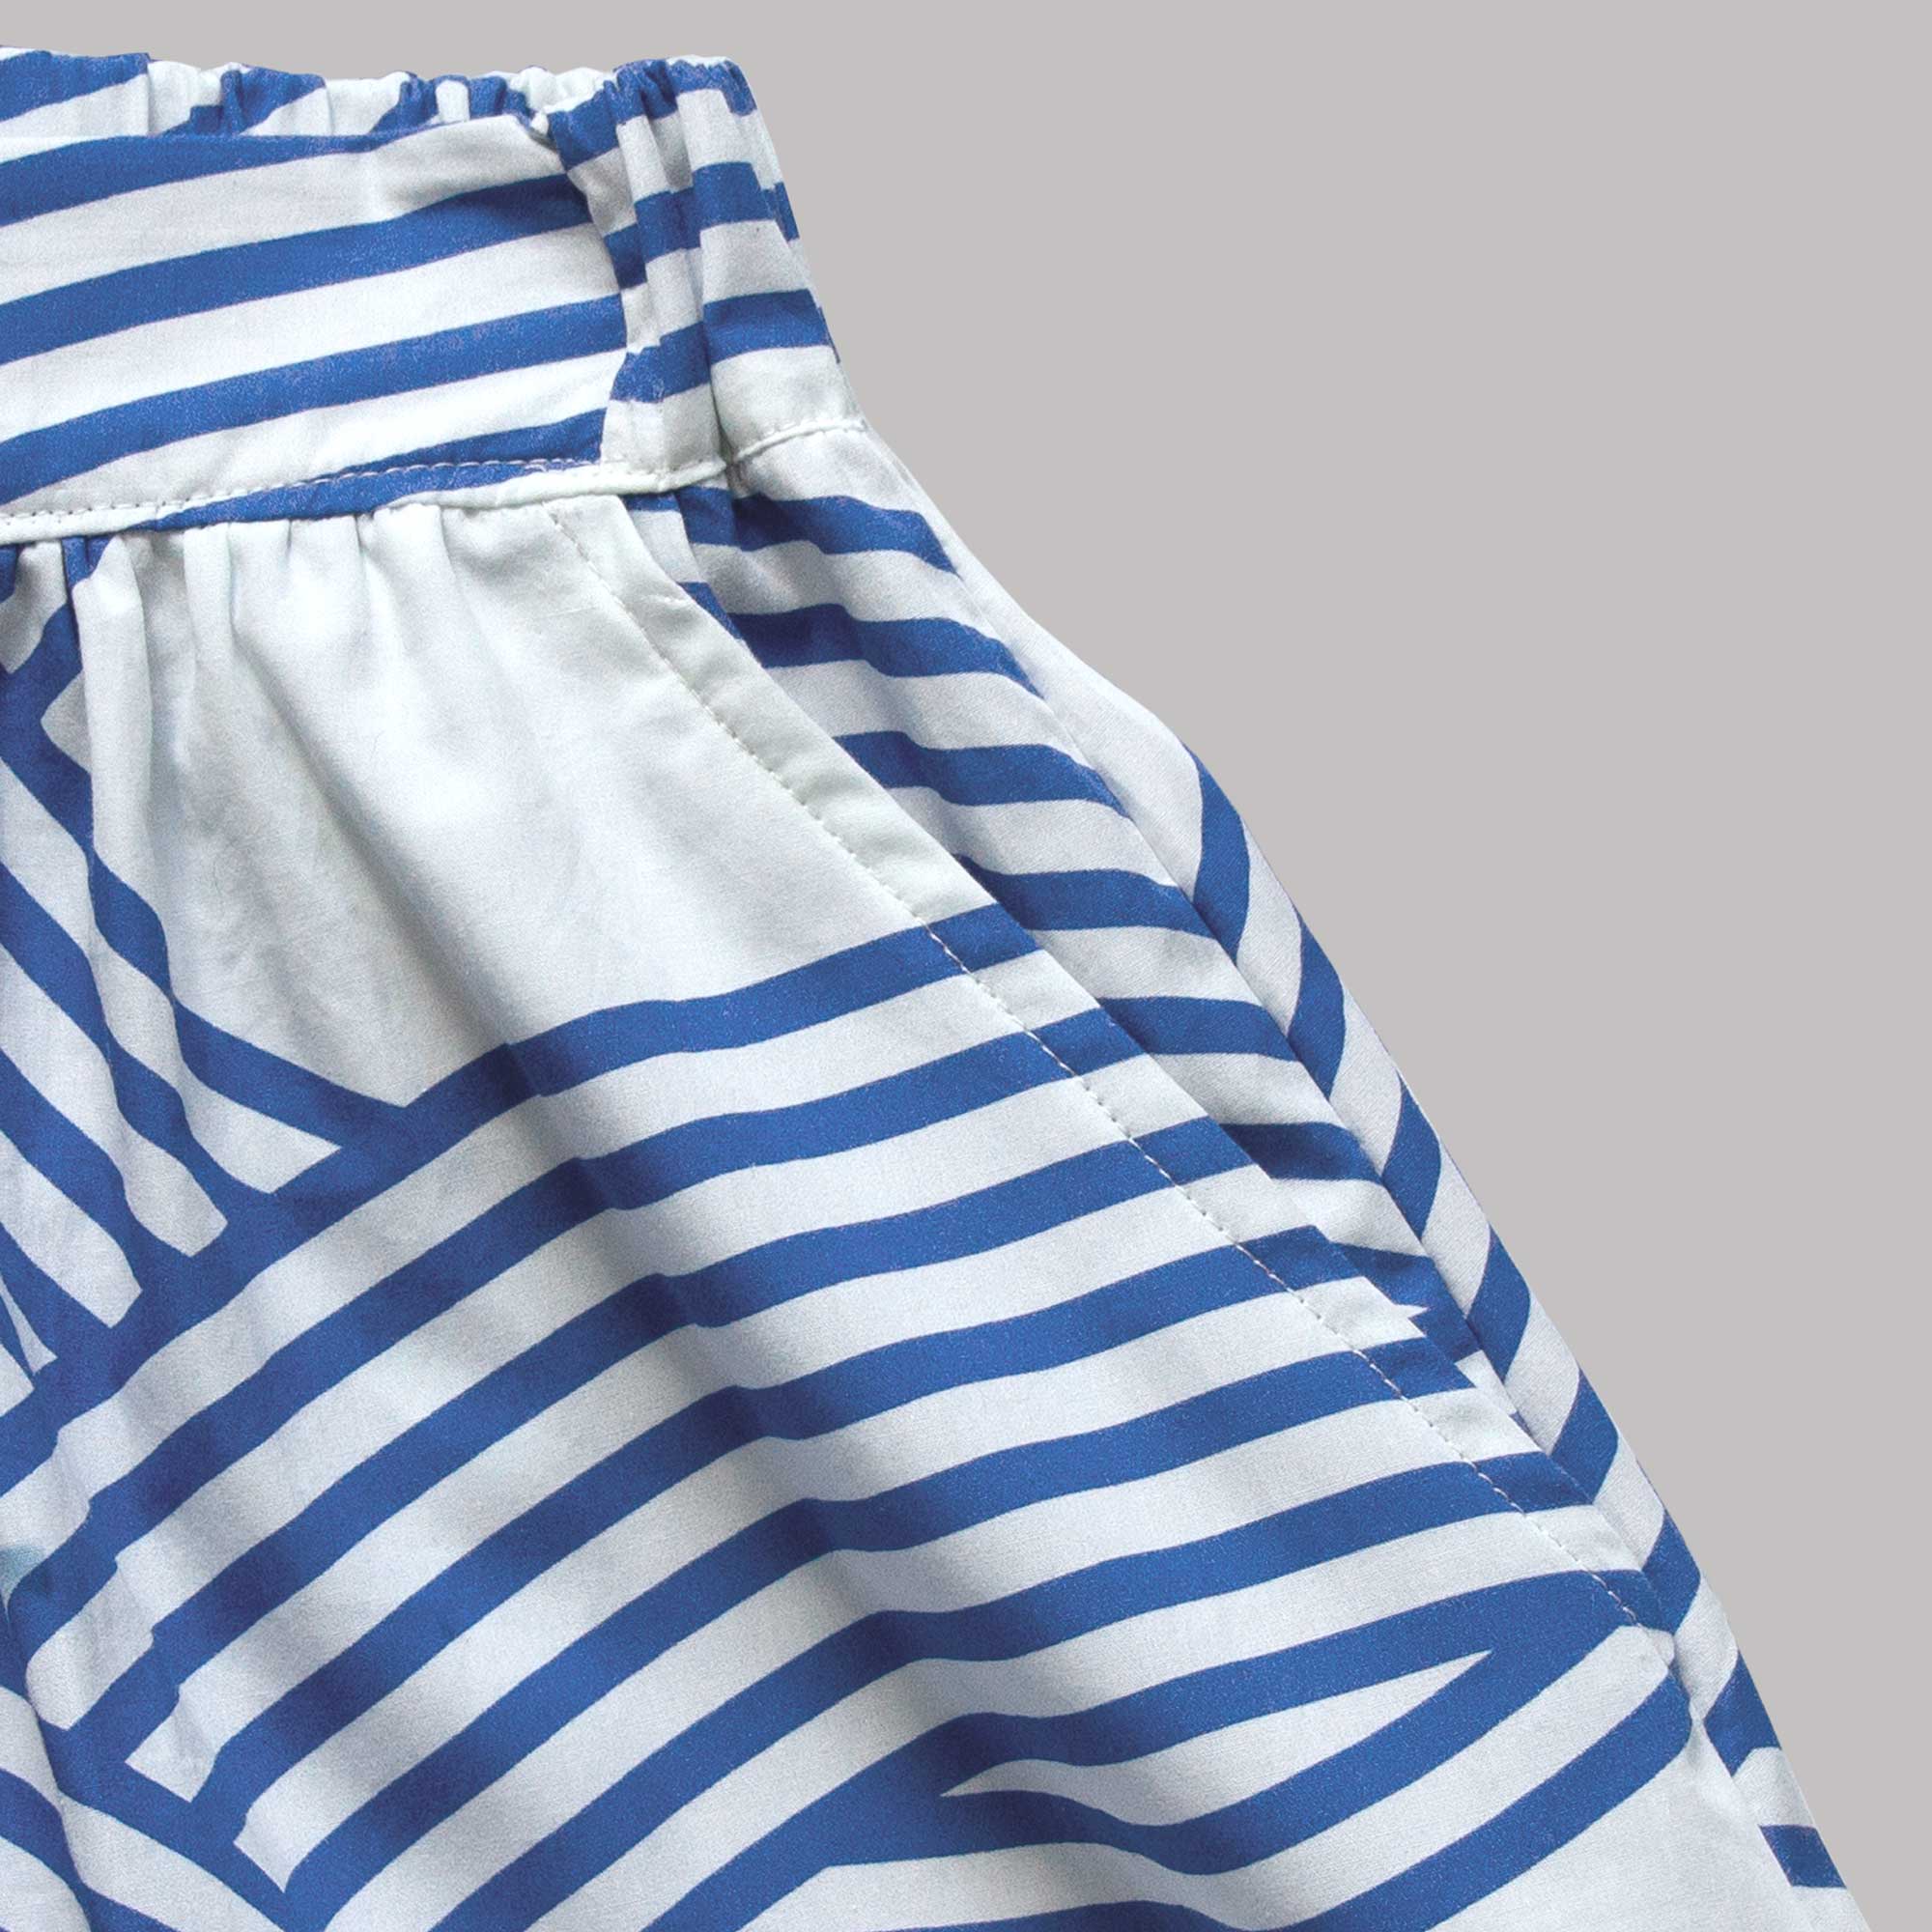 Ocean nederdel i økologisk bomuld, trykt i Tyskland syet i Danmark. Design Anne Rosenberg